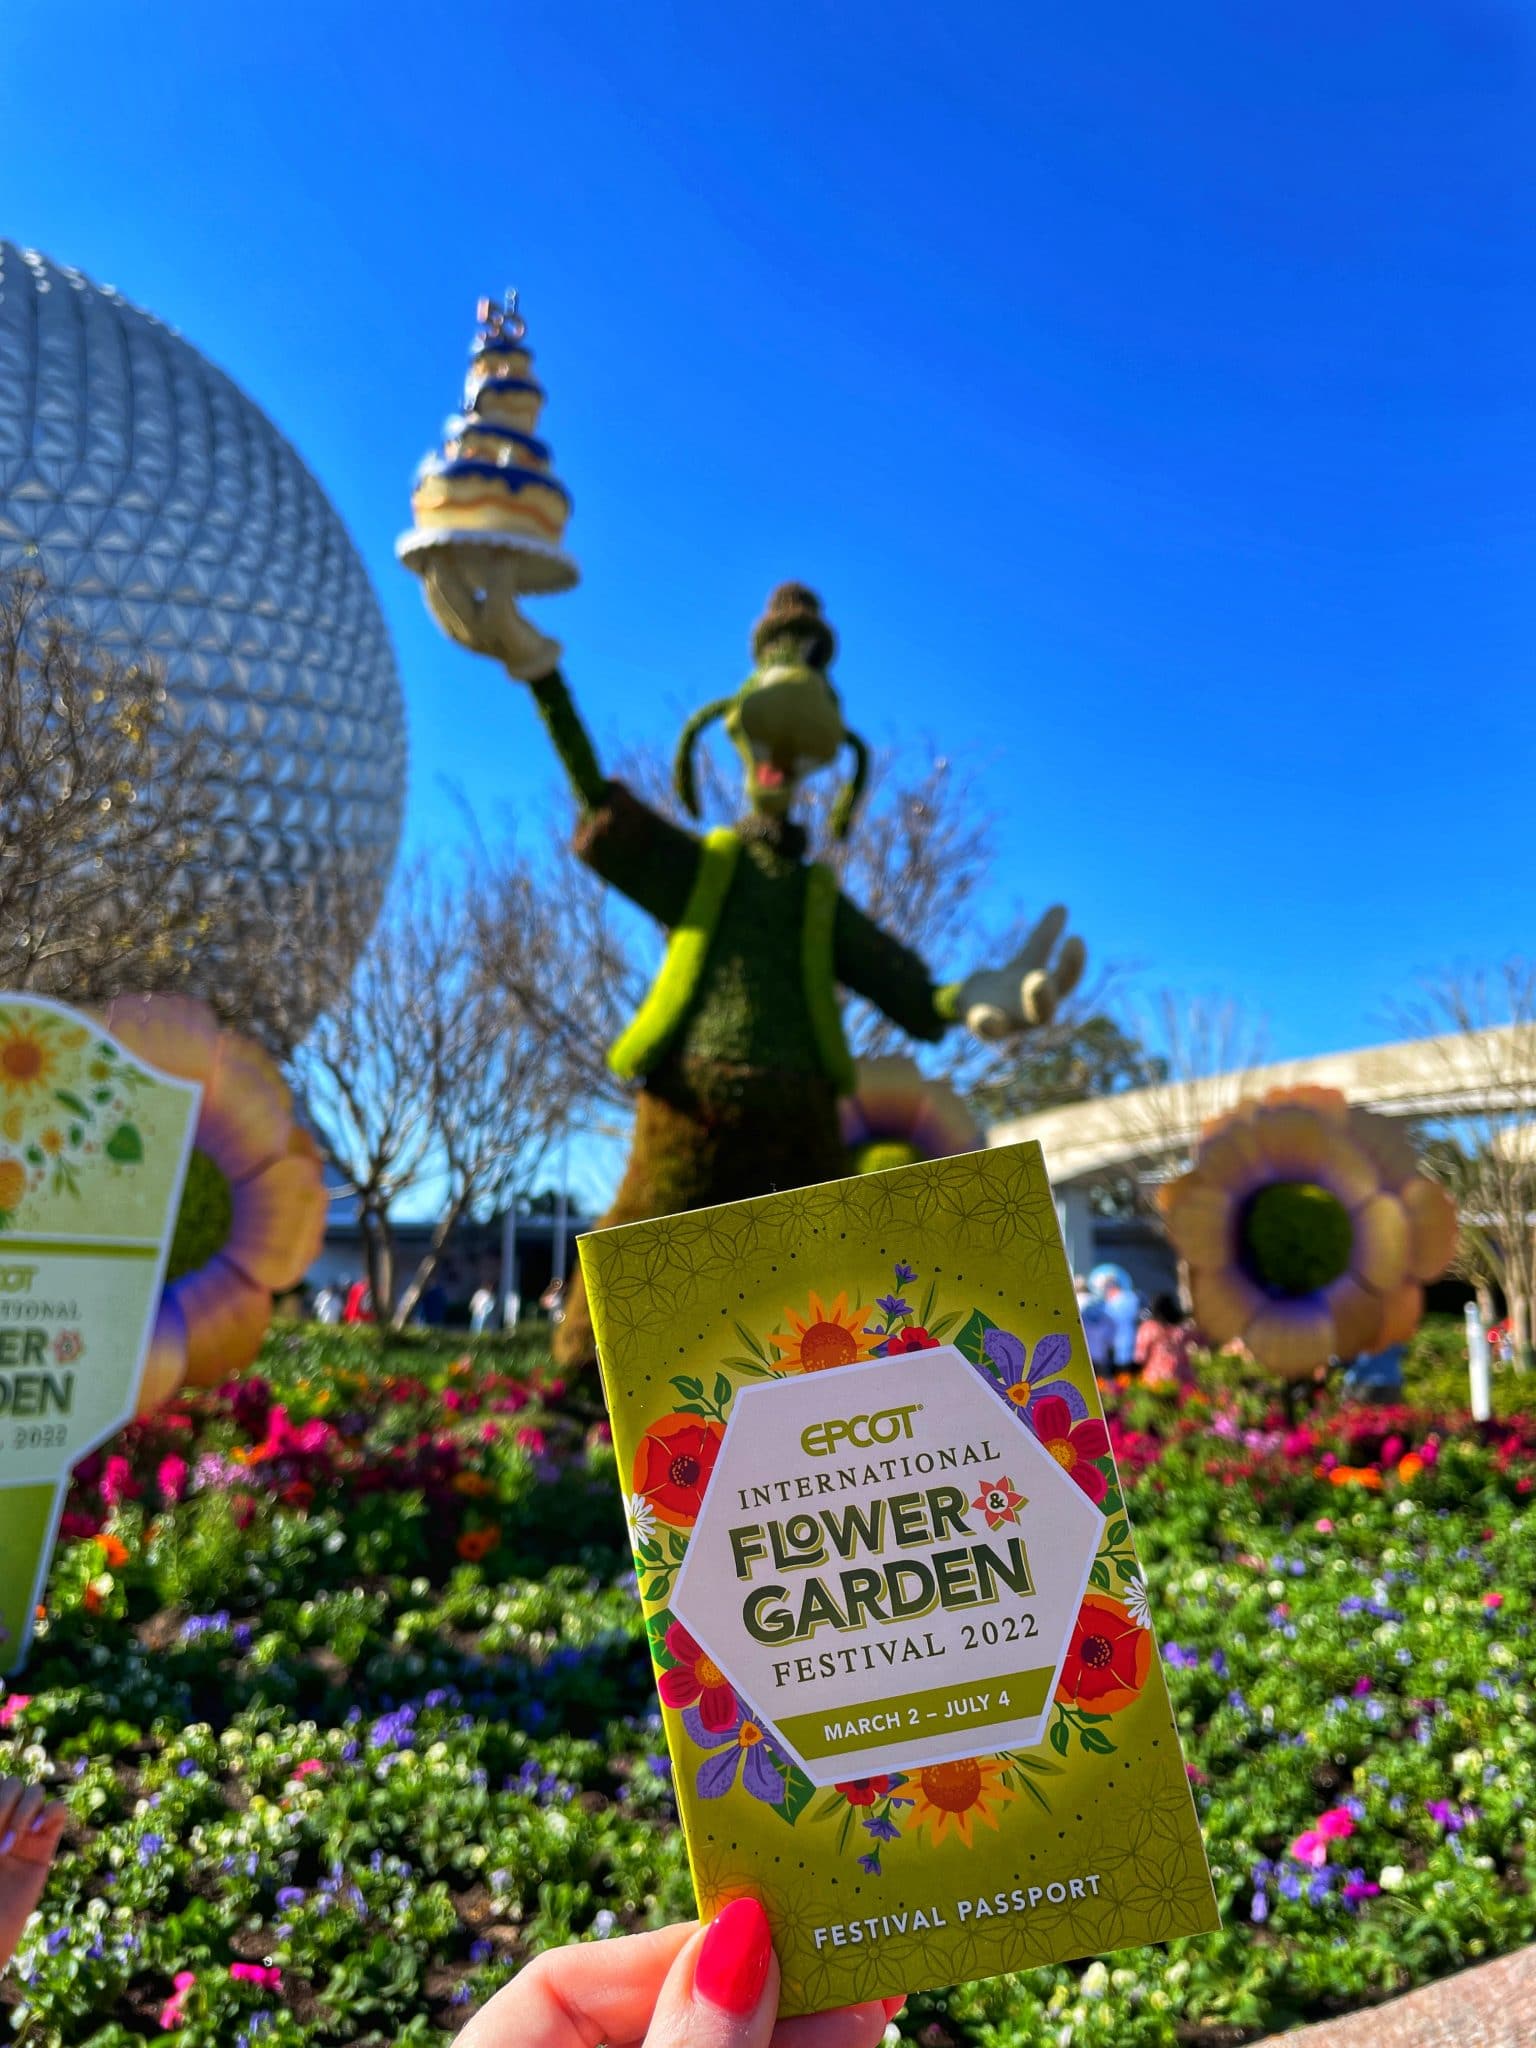 Disney Epcot Flower Garden International Festival 2019 NEW Guide Map & Passport 